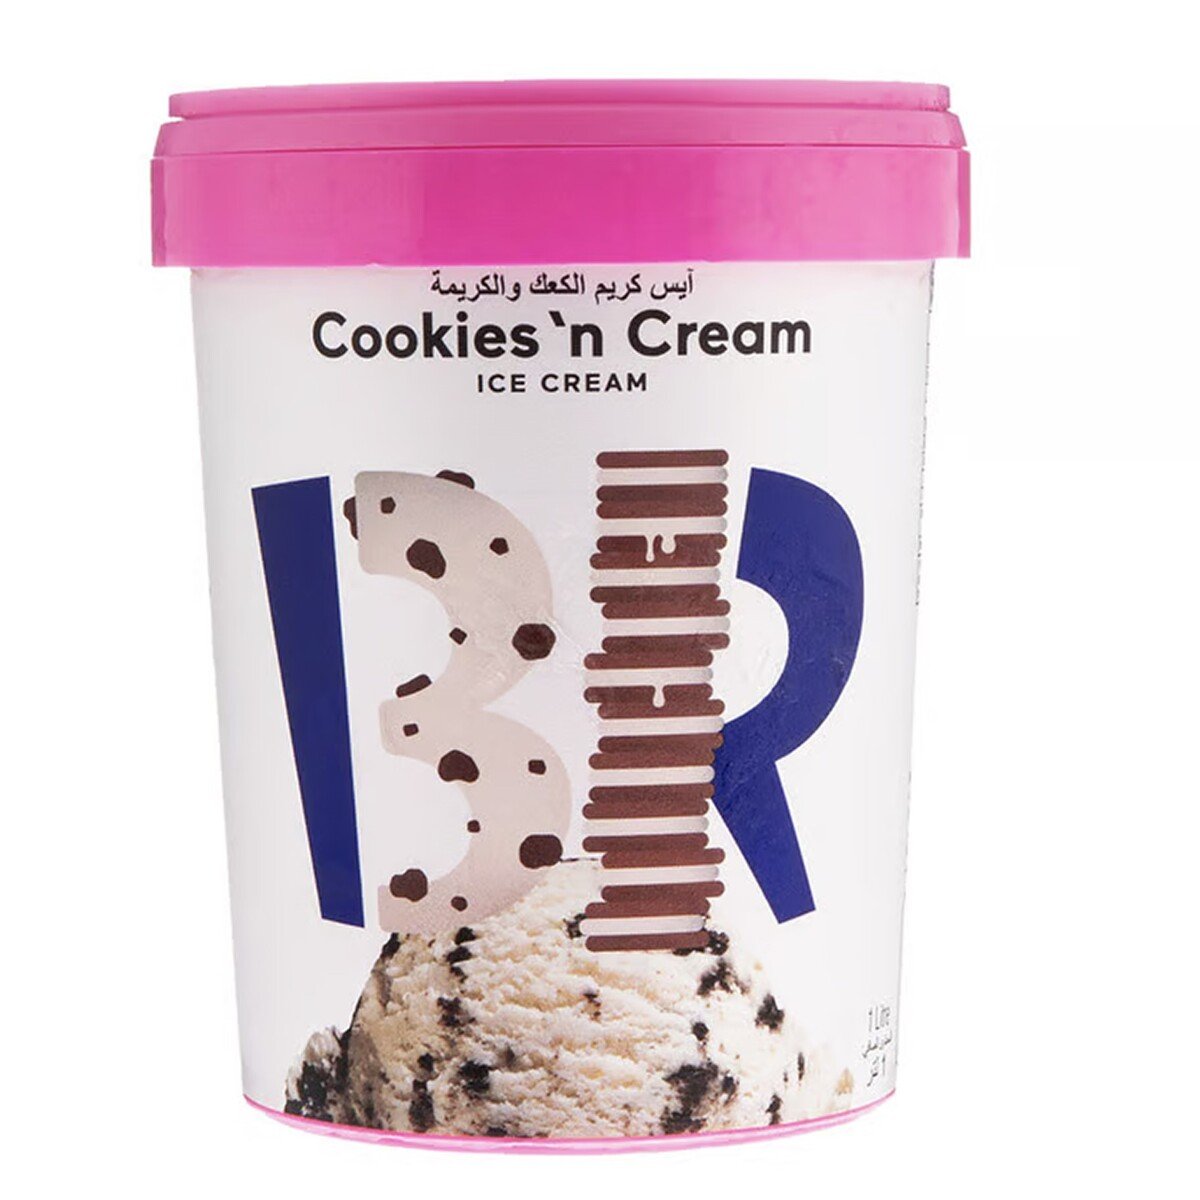 اشتري قم بشراء باسكن روبنز آيس كريم كوكيز وكريمة 1 لتر Online at Best Price من الموقع - من لولو هايبر ماركت Ice Cream Take Home في السعودية